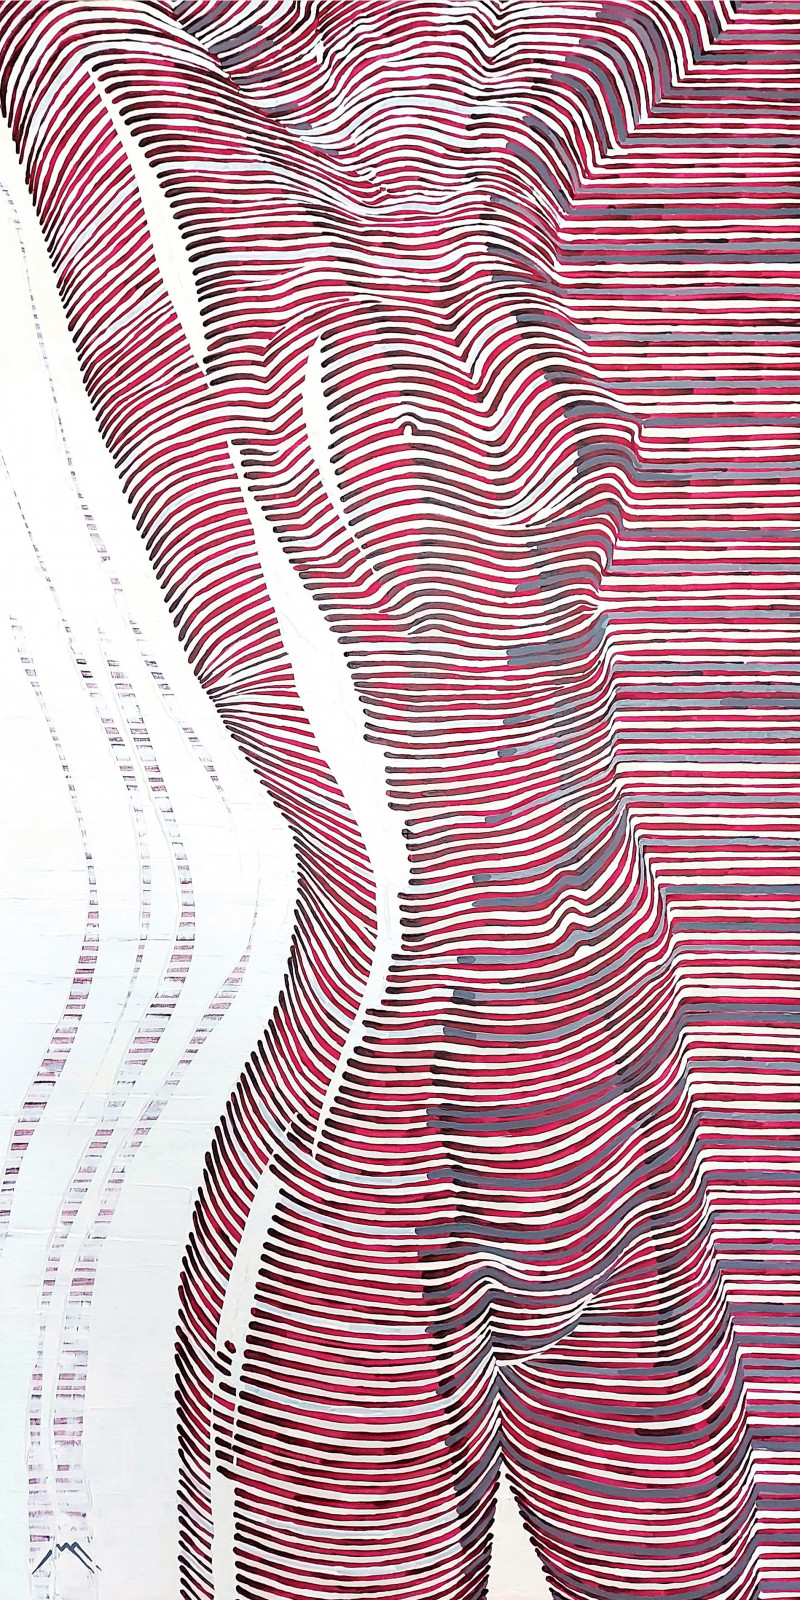 Marius Morkūnas tapytas paveikslas Moters linijos, Moters grožis , paveikslai internetu